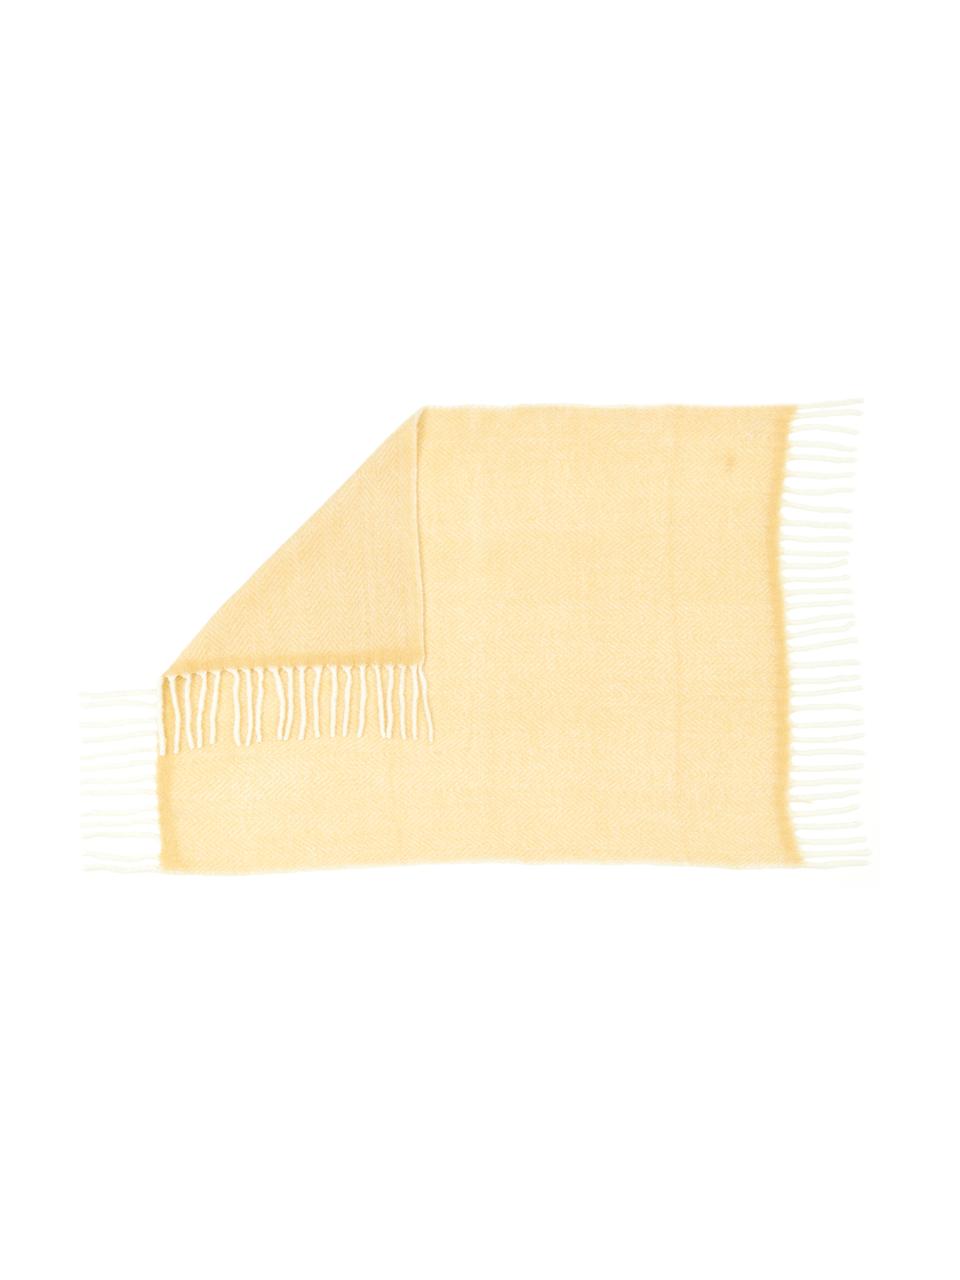 Plaid en laine jaune avec franges Mathea, 60 % laine, 25 % acrylique, 15 % nylon, Jaune, couleur crème, long. 170 x larg. 130 cm